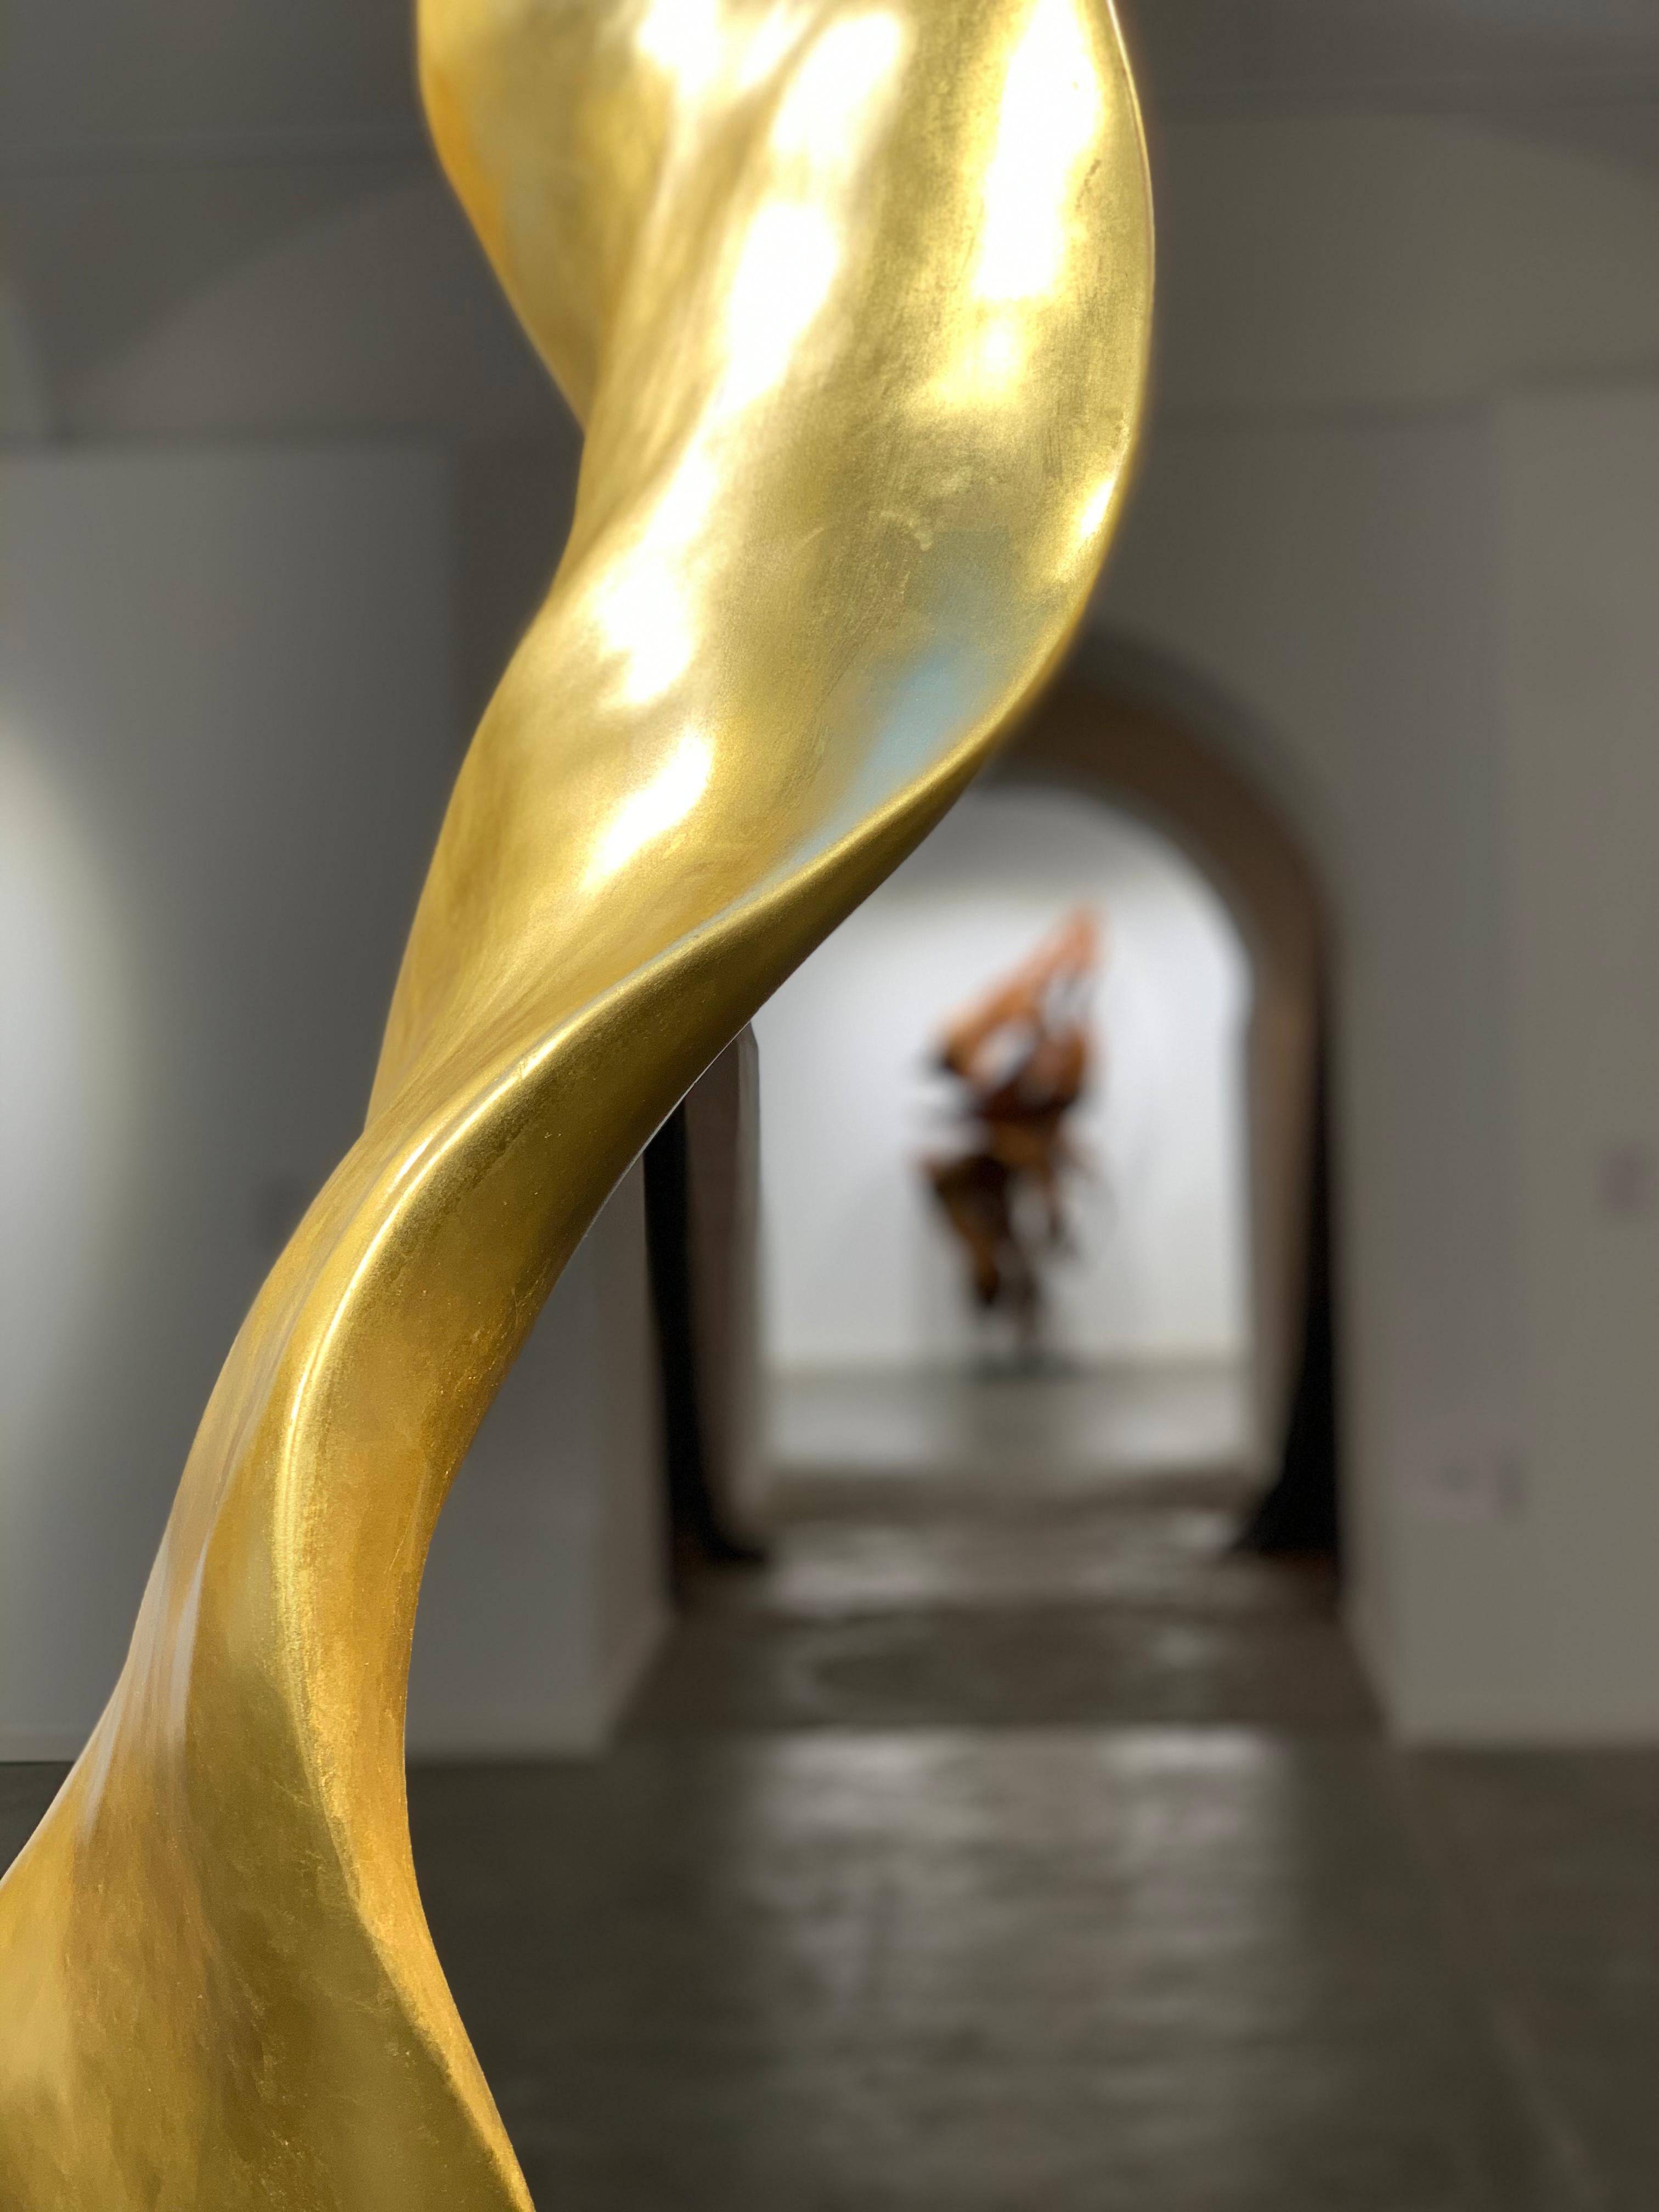 Racines d'acajou et feuilles d'or

La Joaquim Ingravidesa Sculpture Alliance est formée par un groupe international de sculpteurs et de designers qui collaborent pour créer des sculptures abstraites inspirées par la nature. Ils travaillent souvent